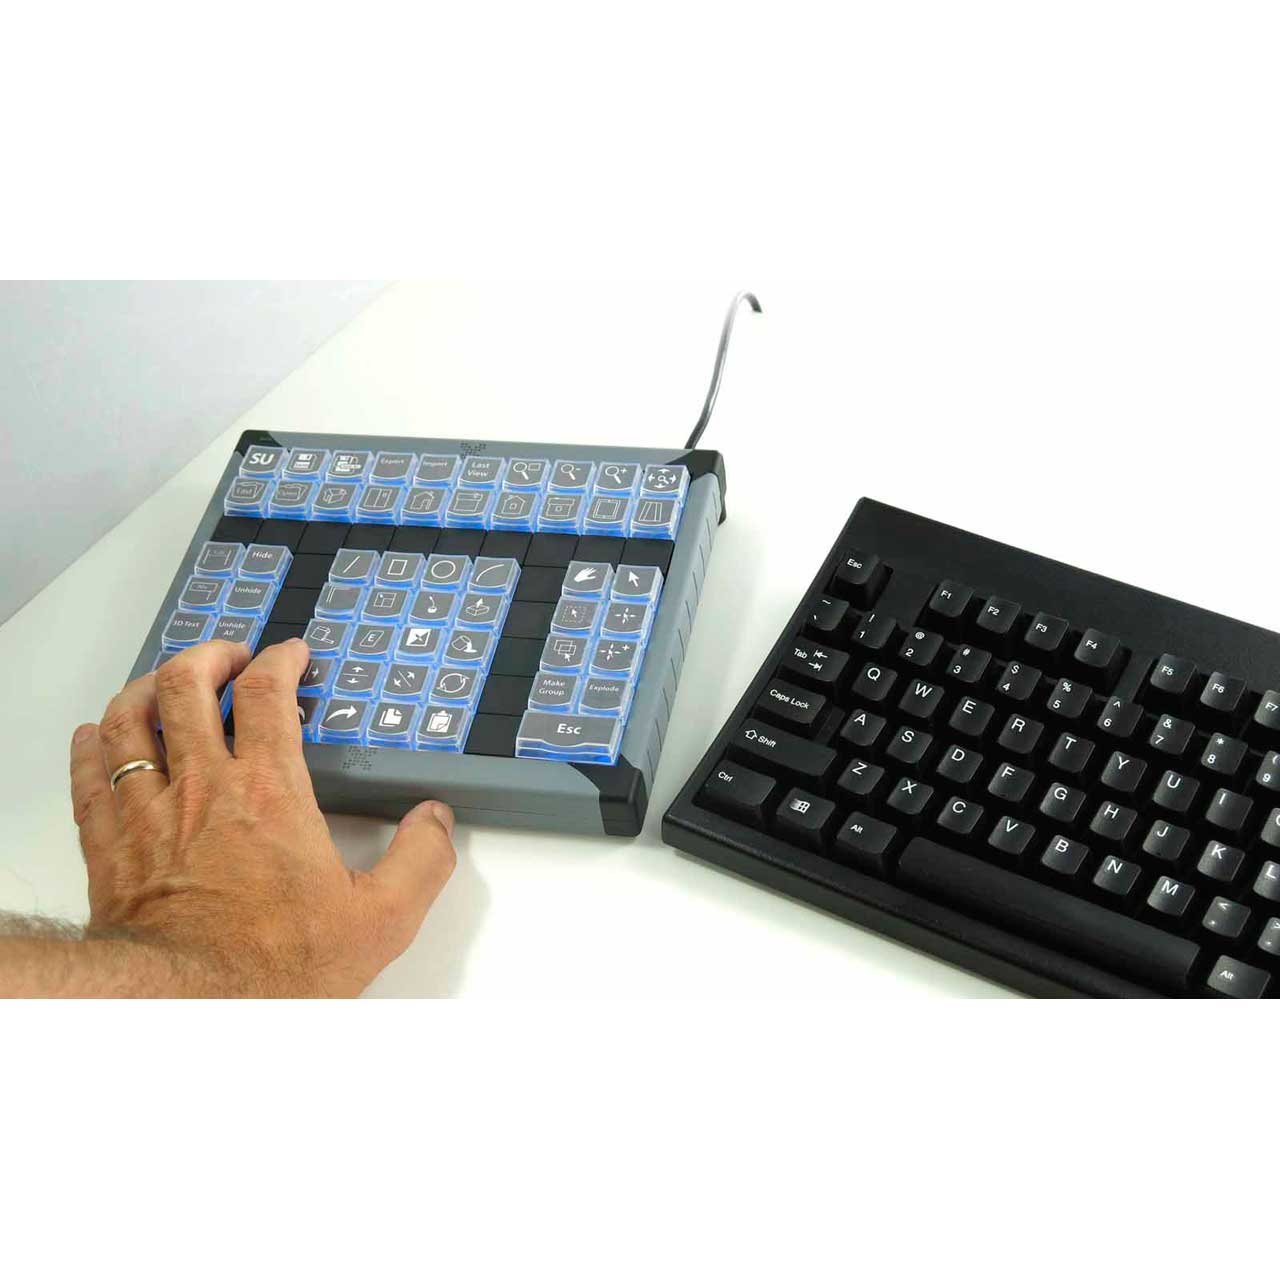 Управление экраном клавиатура. Программируемая клавиатура Атол KB-60-U. Клавиатура Keys Programmable. Универсальная панель управления x-Keys XK-60 USB Keyboard. Клавиатура для программиста.